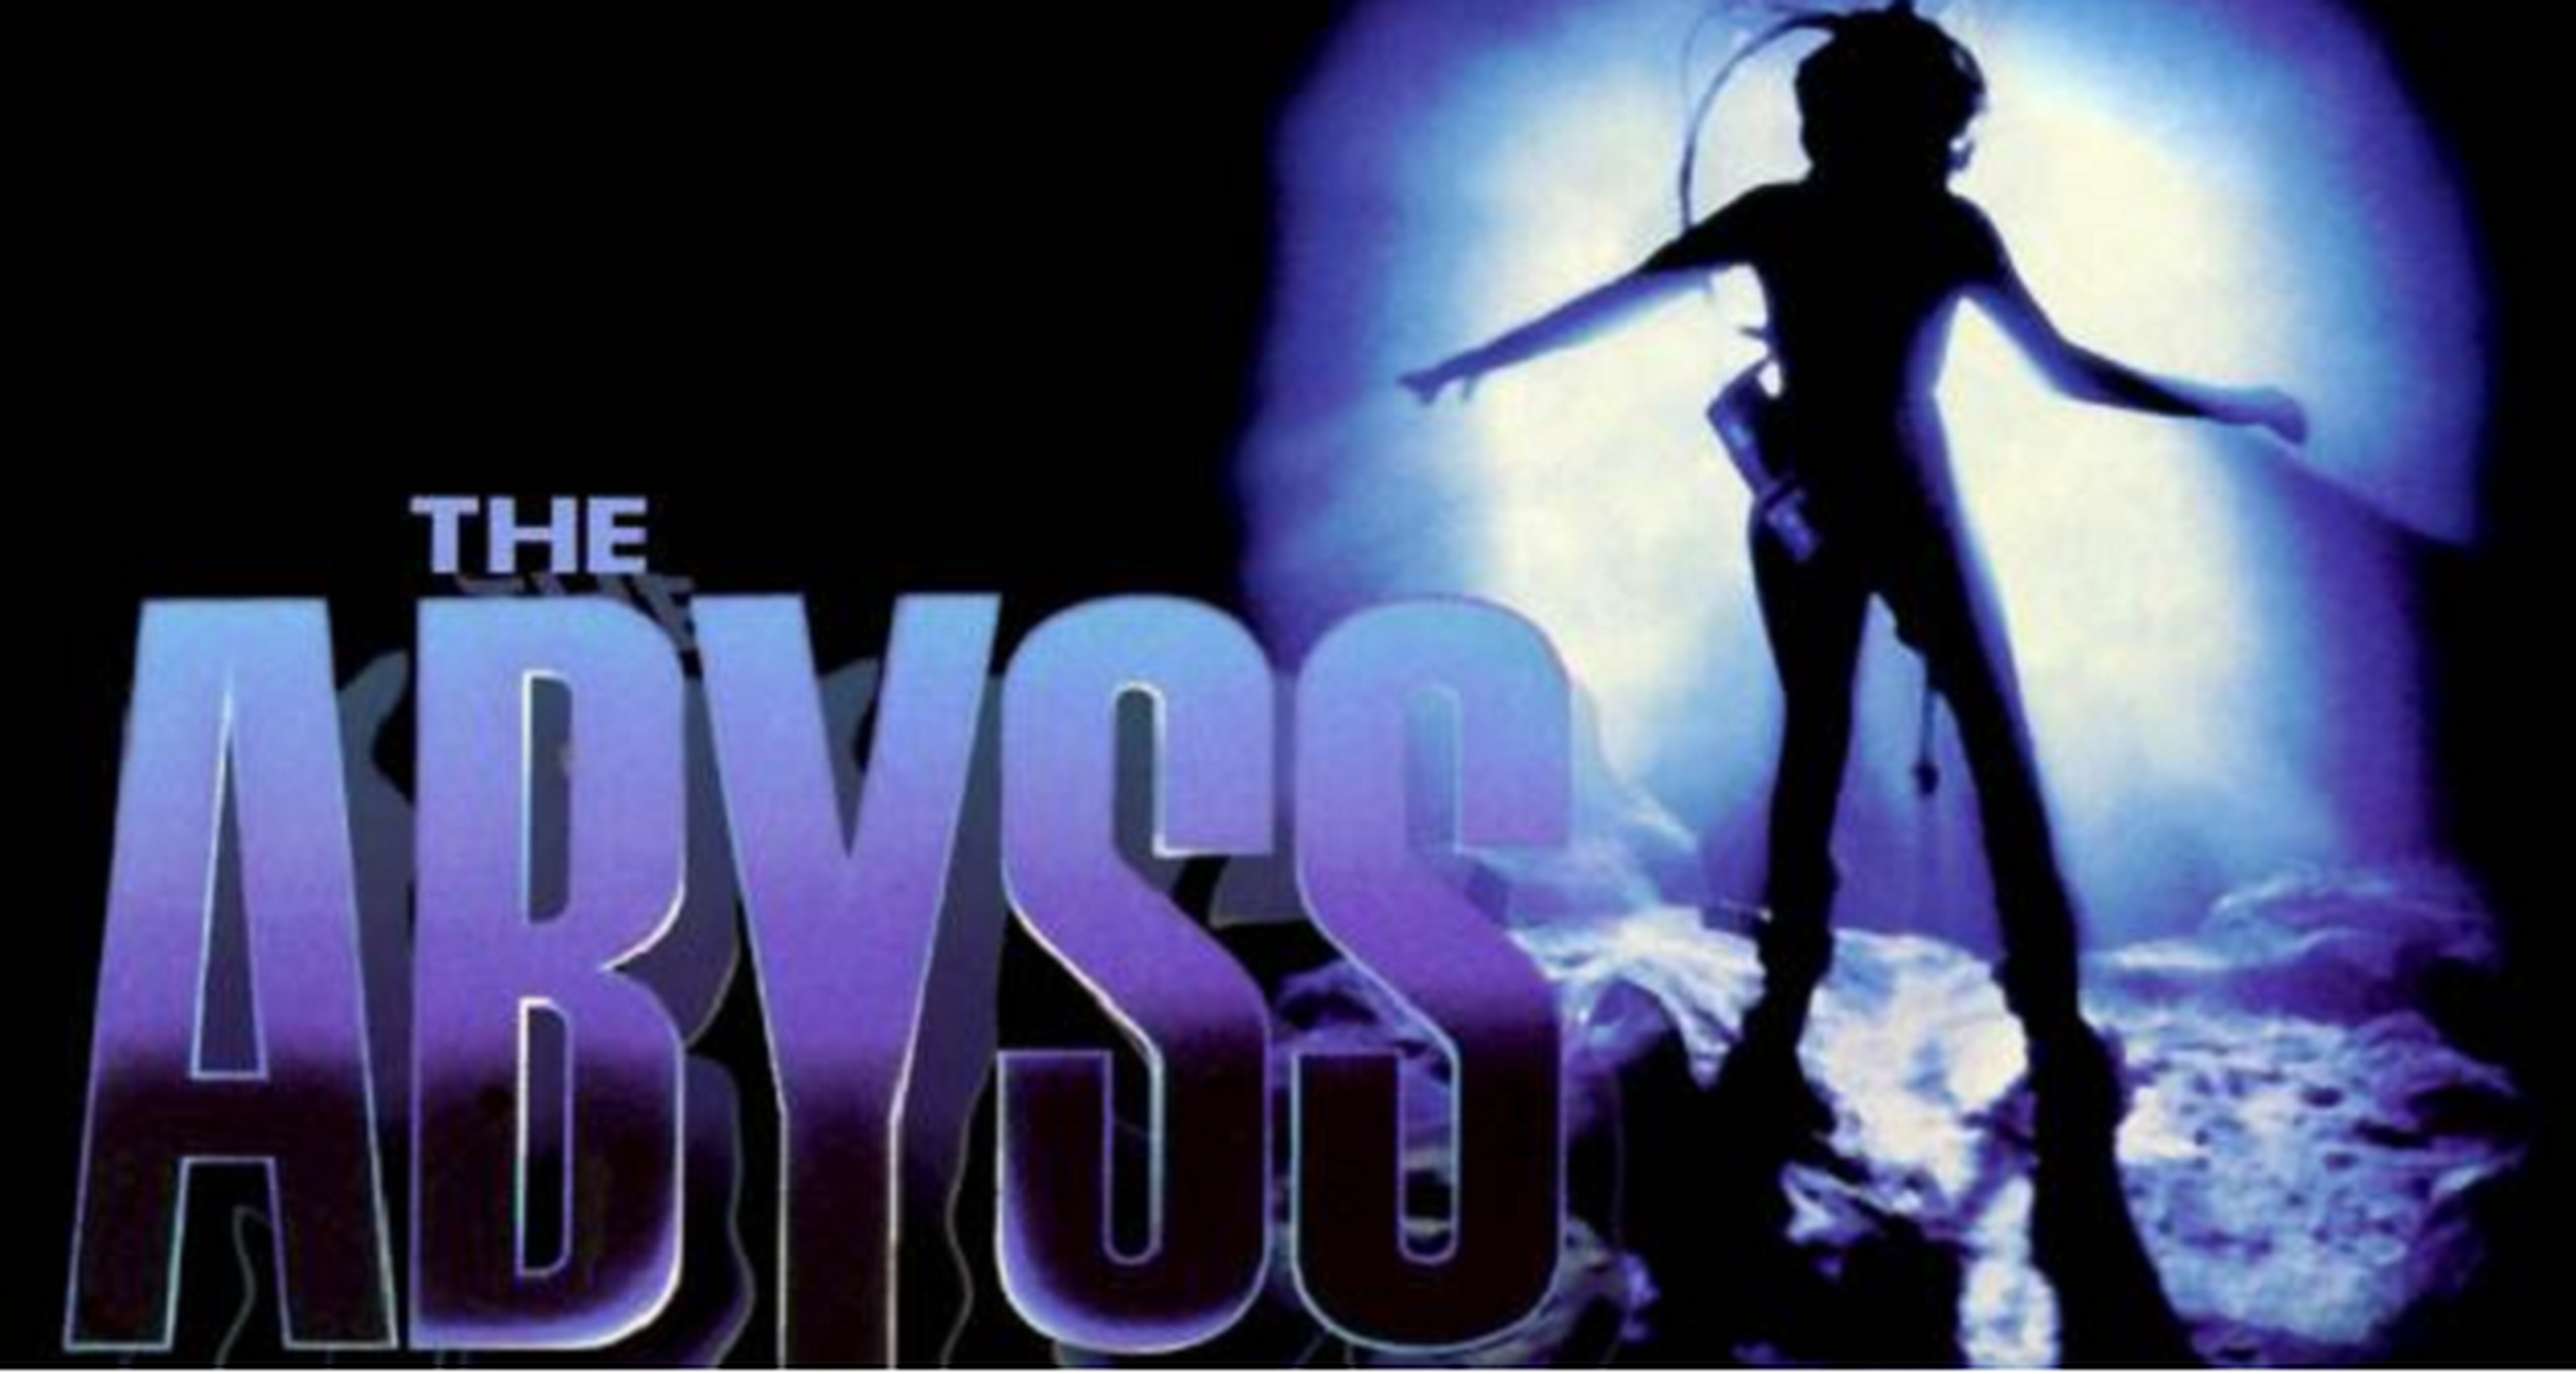 Cine de ciencia ficción: Abyss